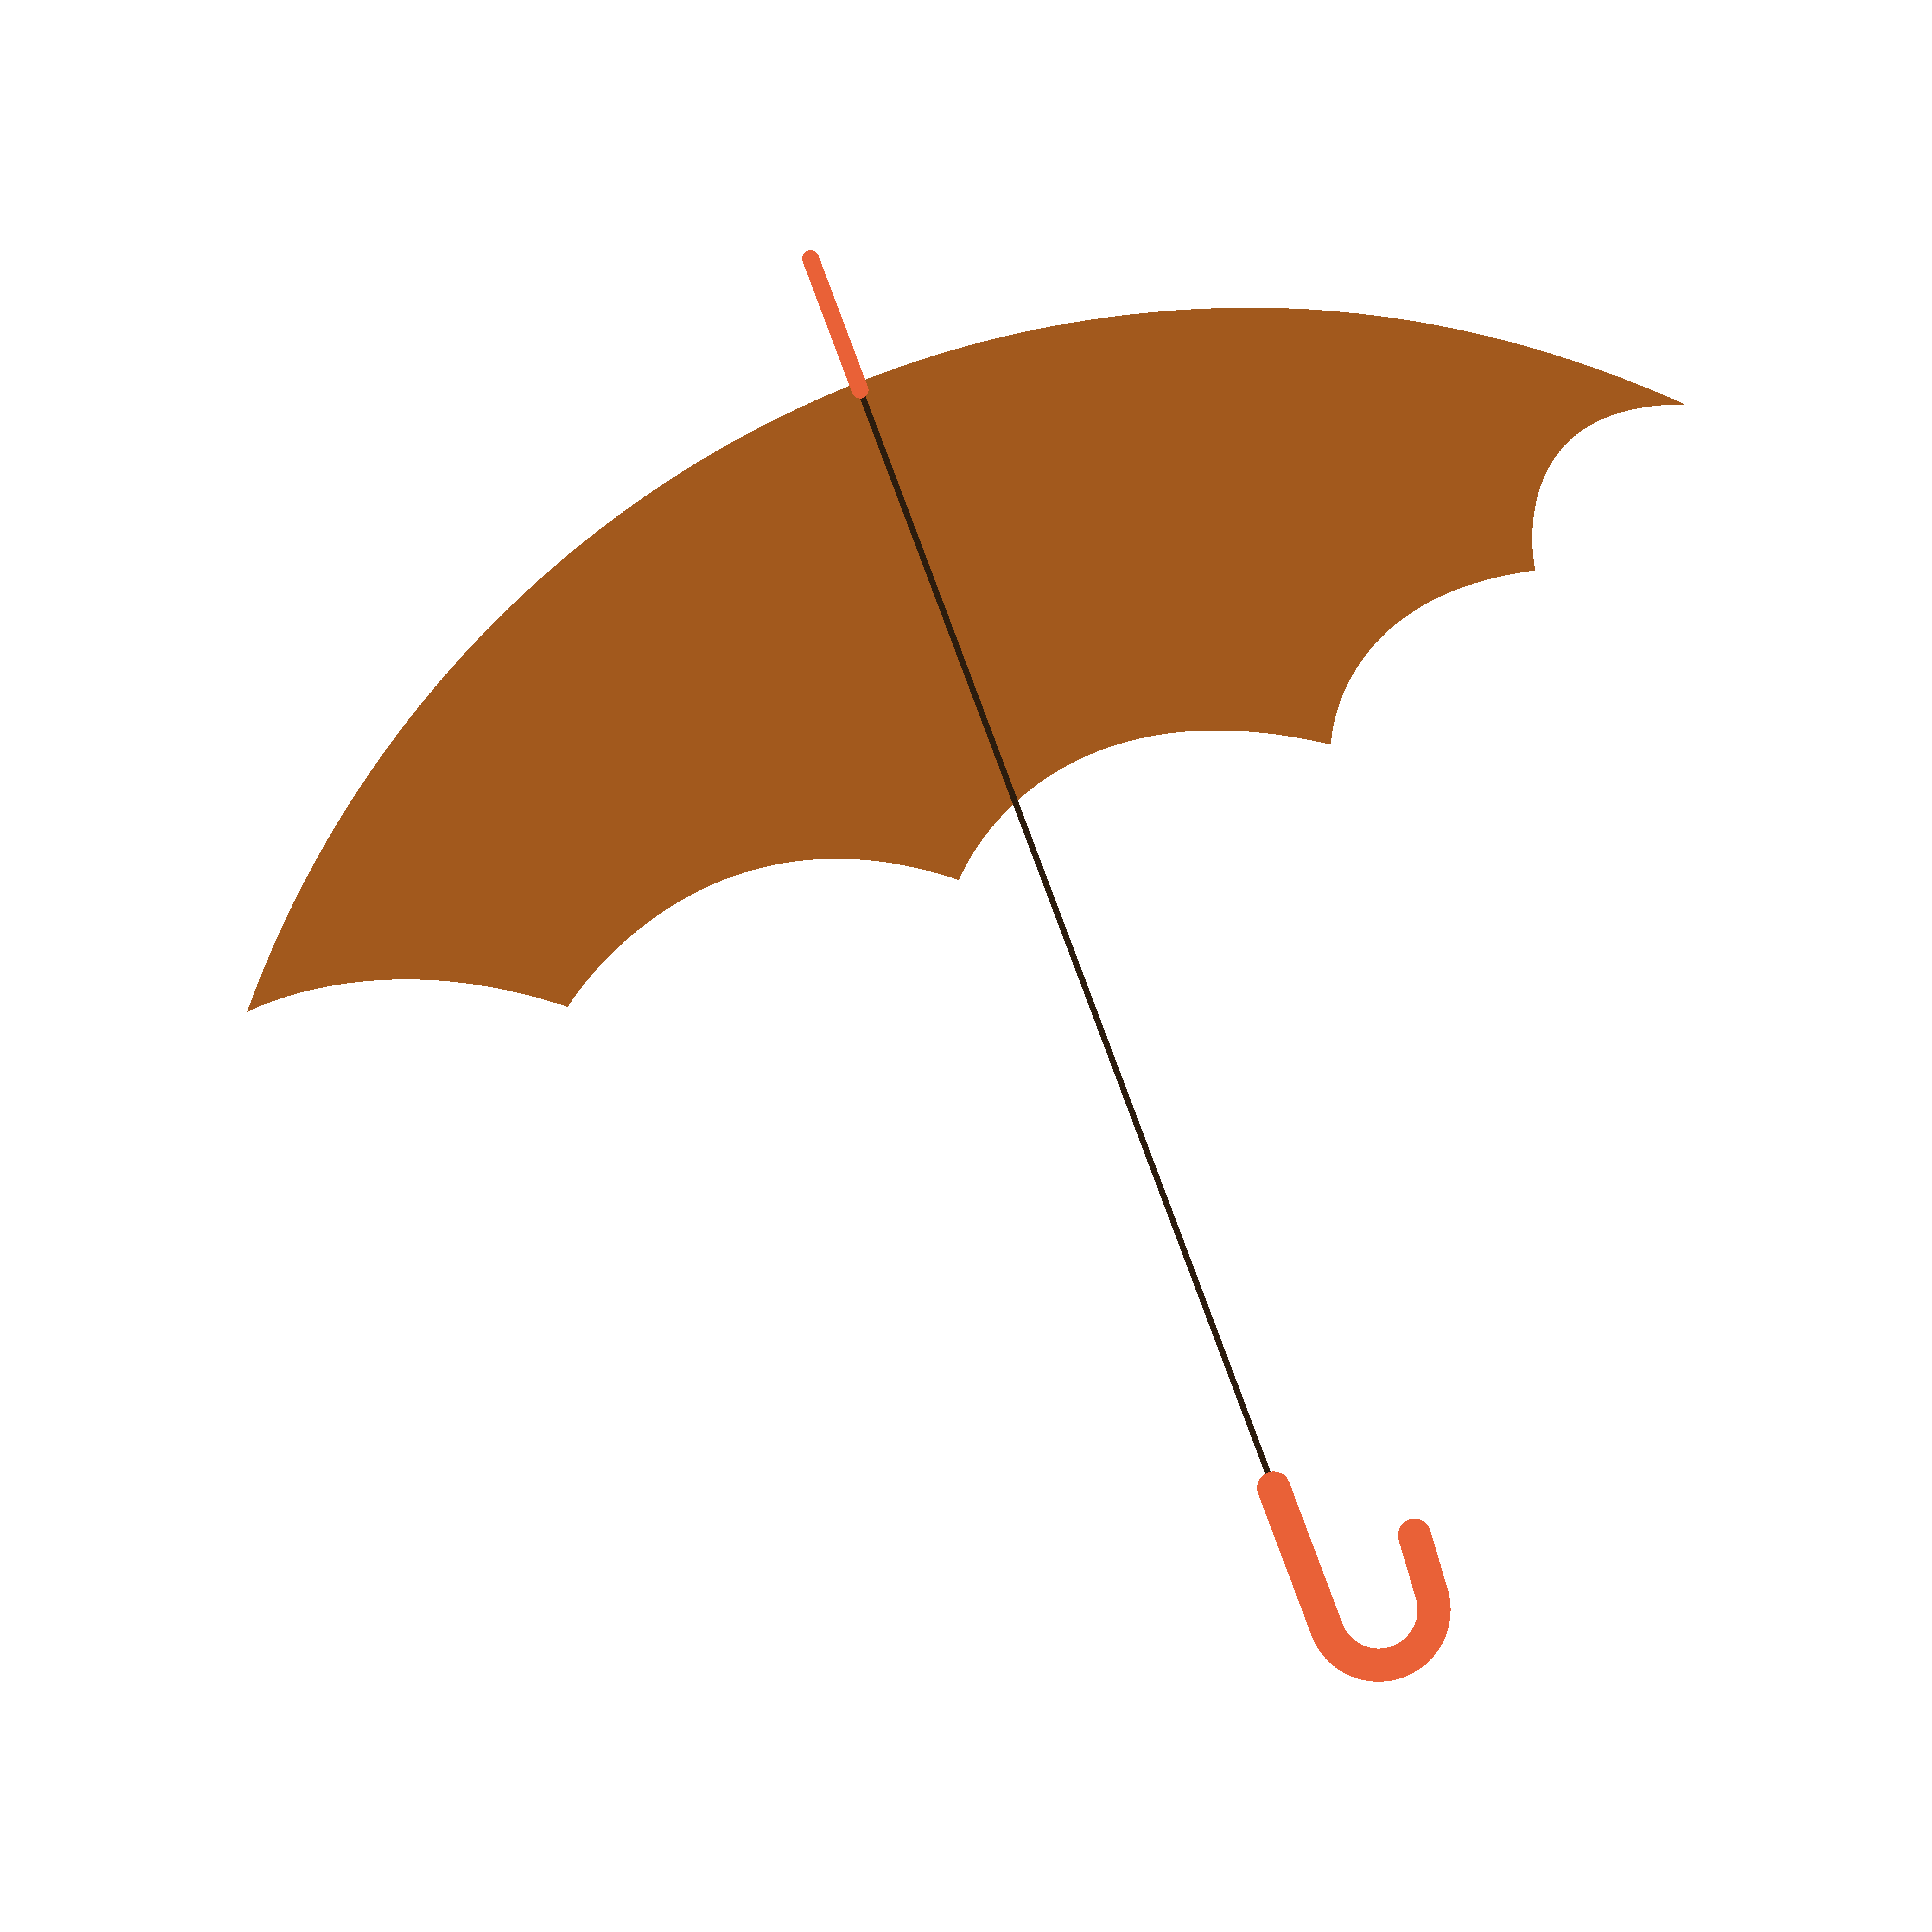 唯美雨伞矢量图 唯美雨伞矢量图设计素材下载 懒人图库